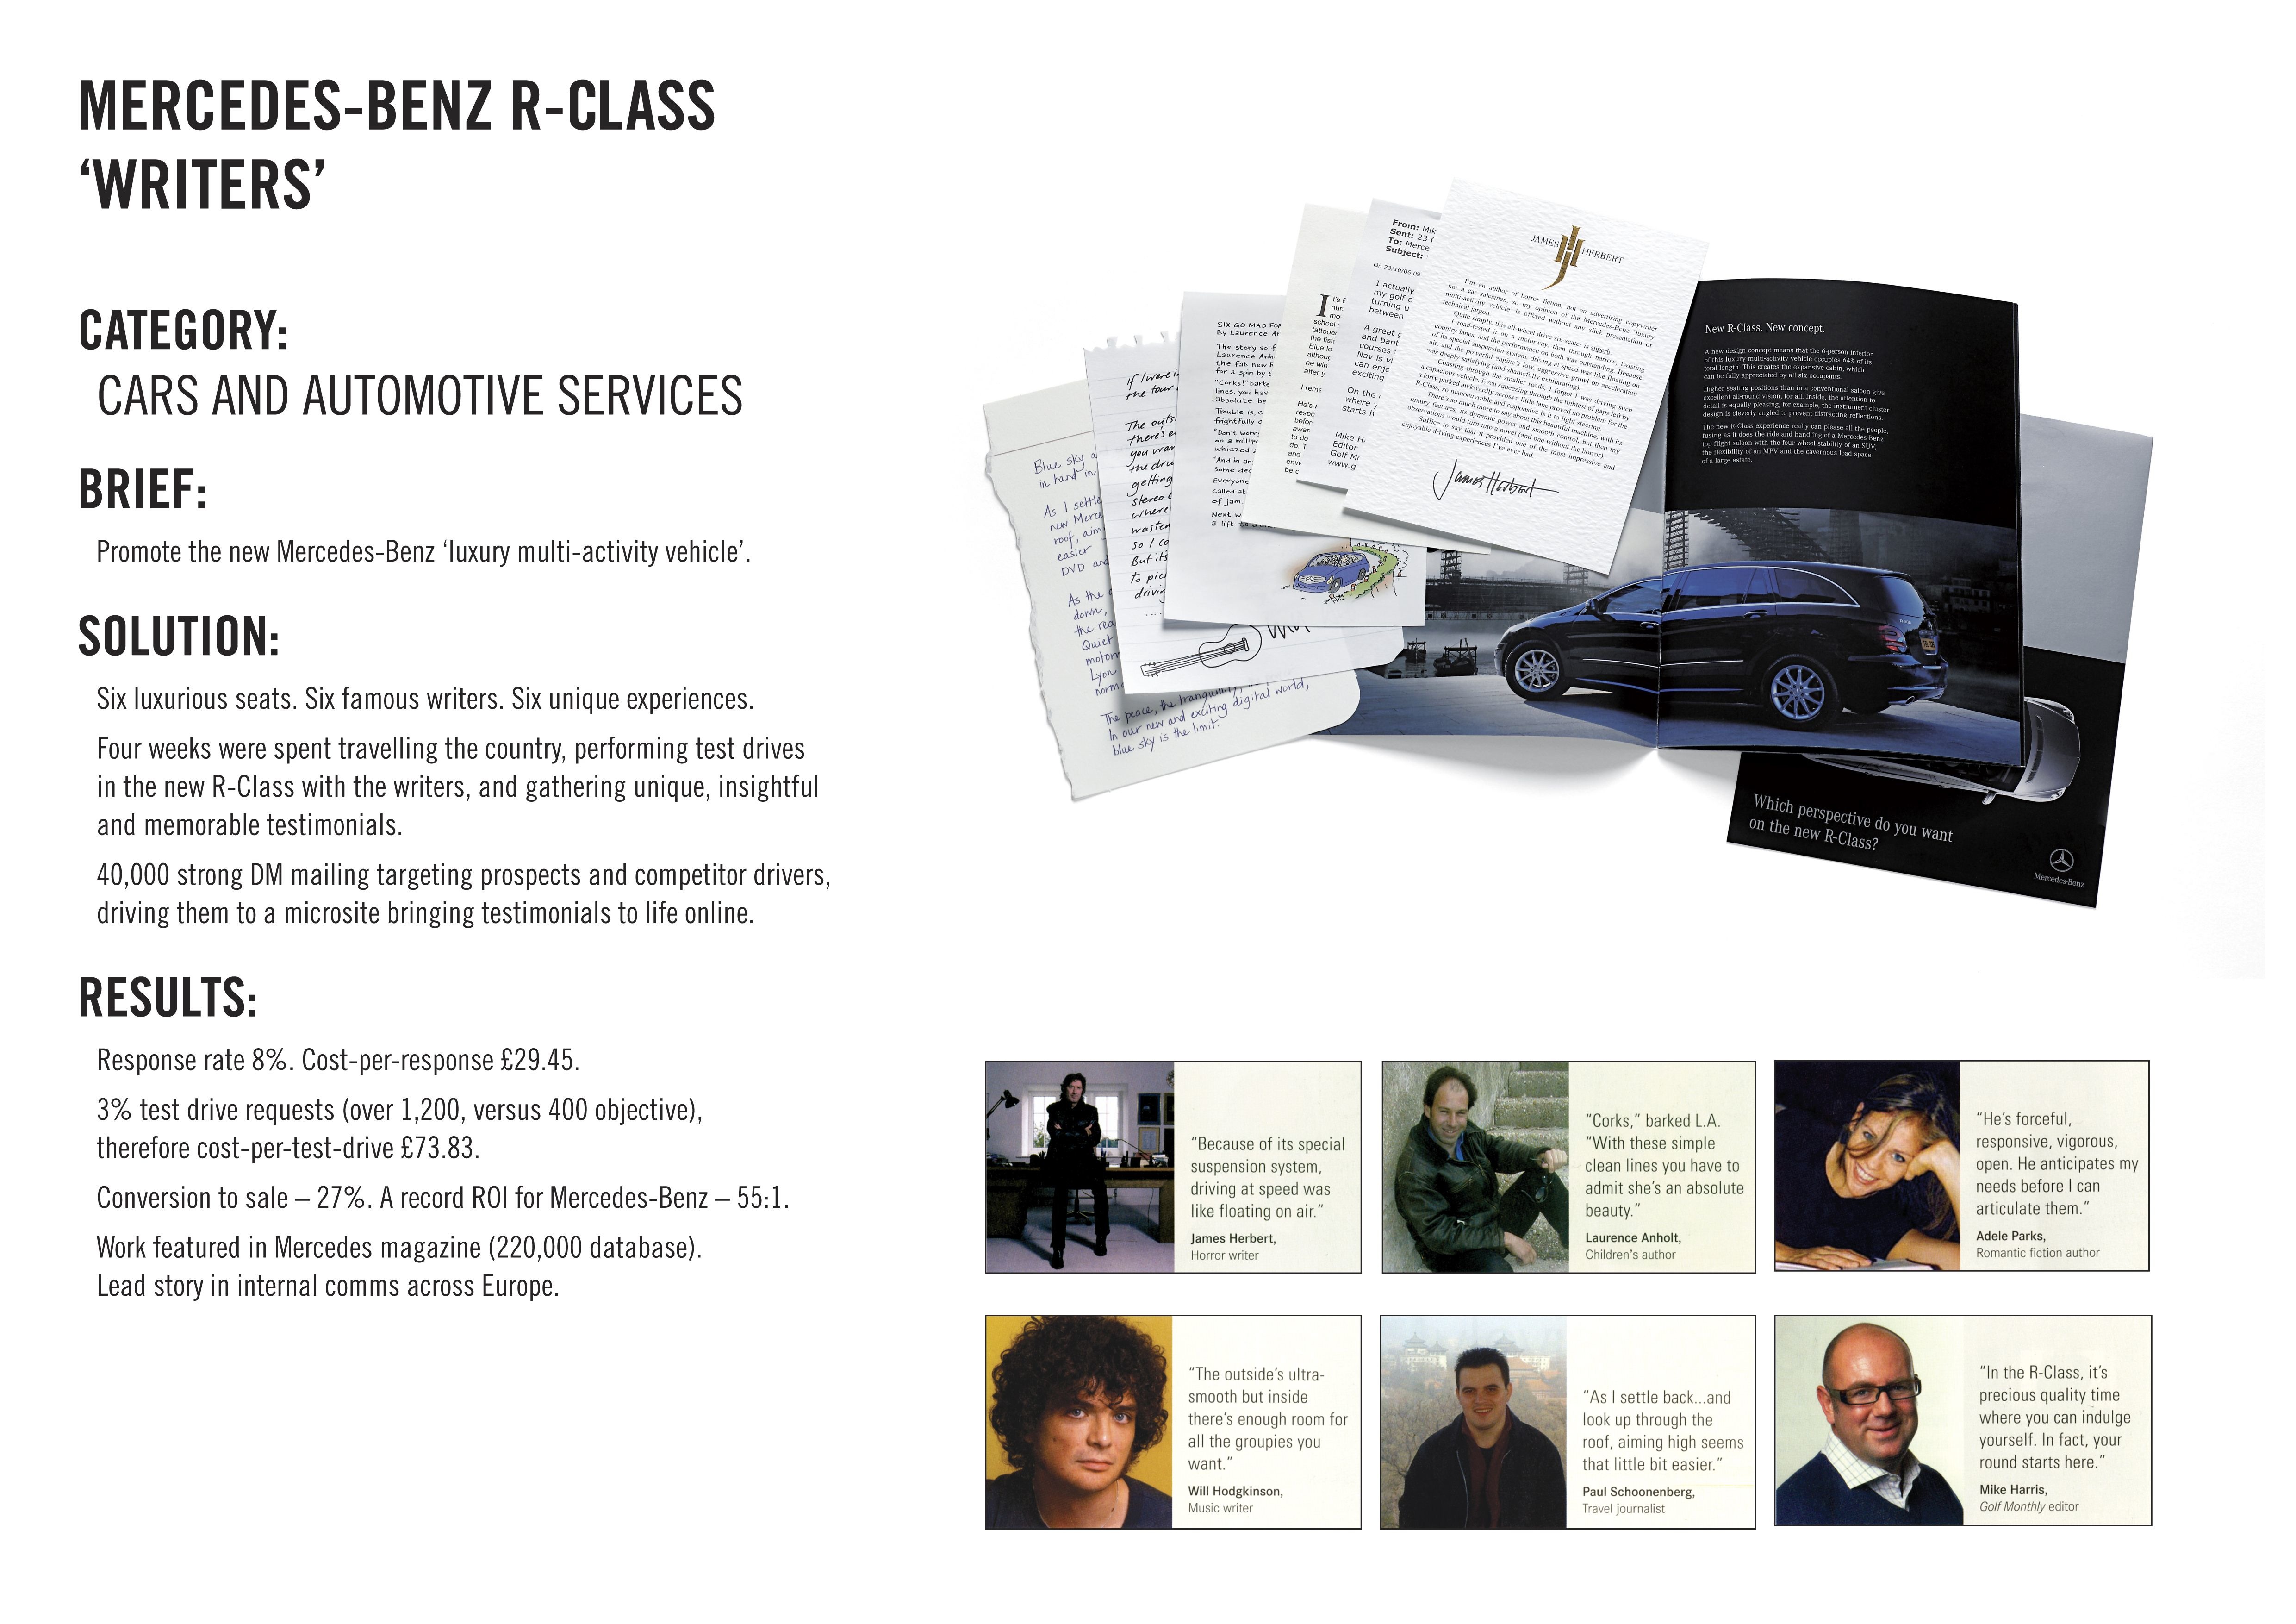 MERCEDES-BENZ R-CLASS